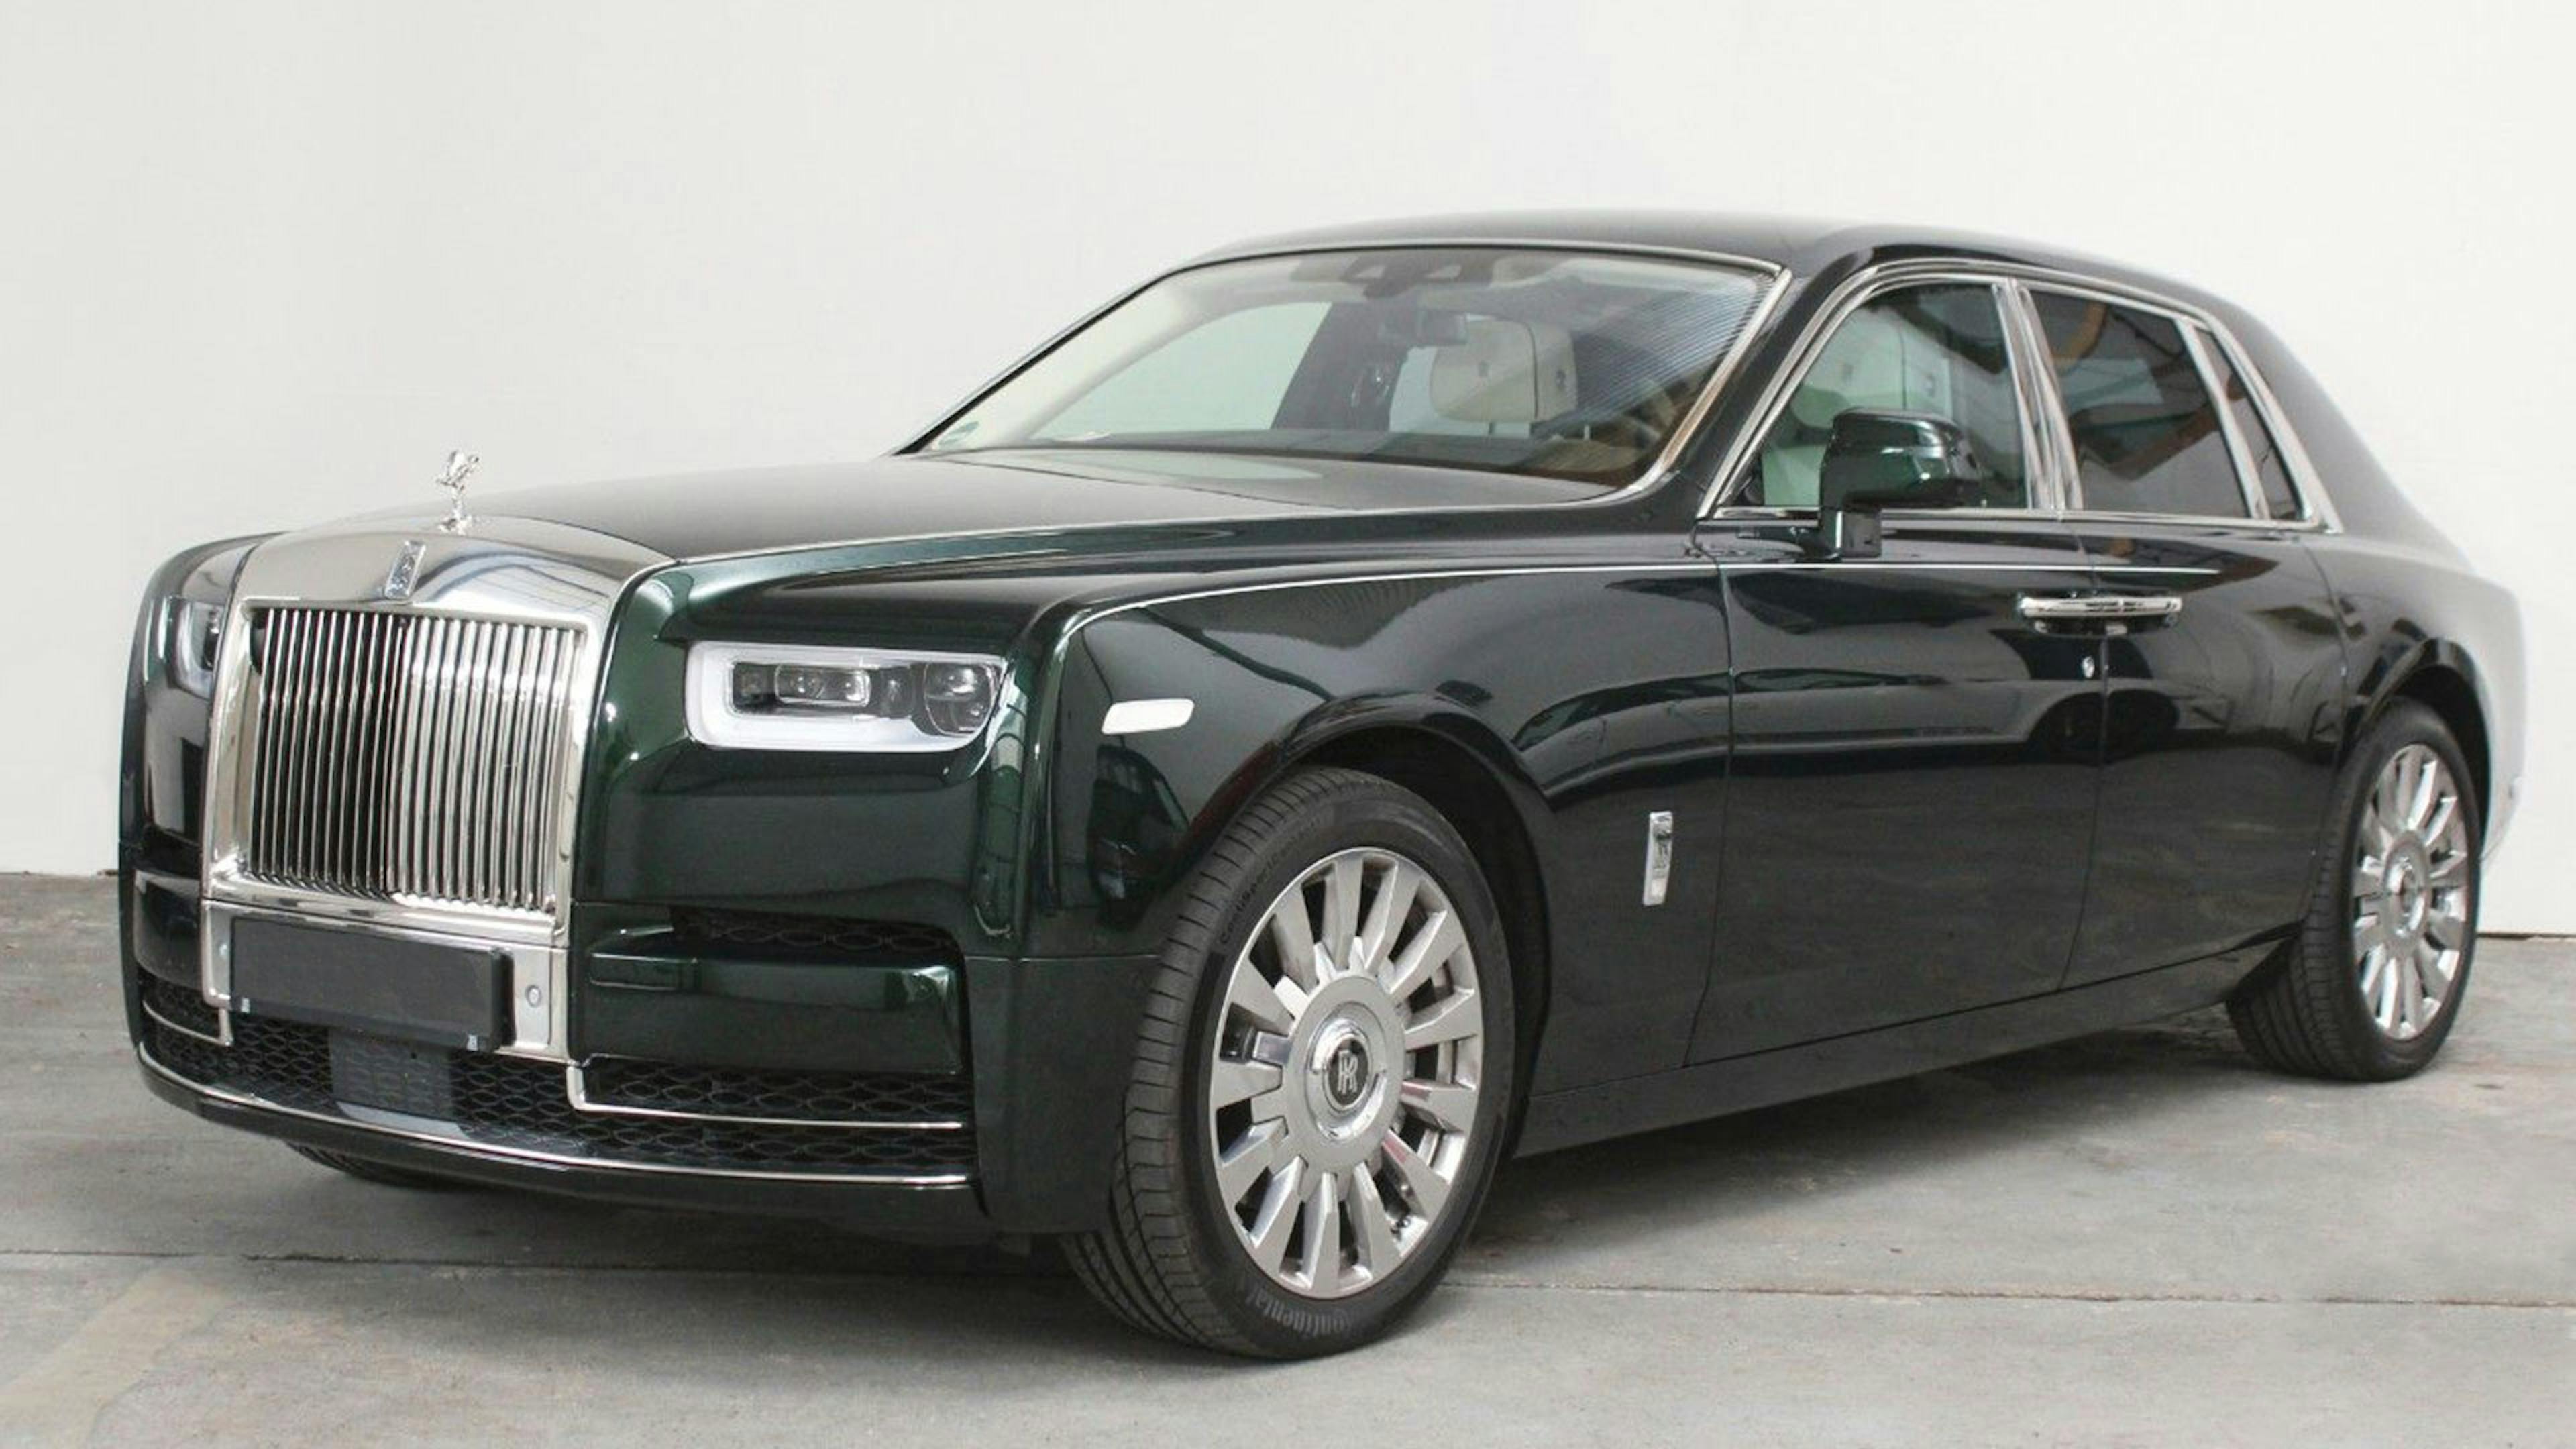 Ein schwarzer Rolls-Royce Phantom steht vor einer weißen Wand.